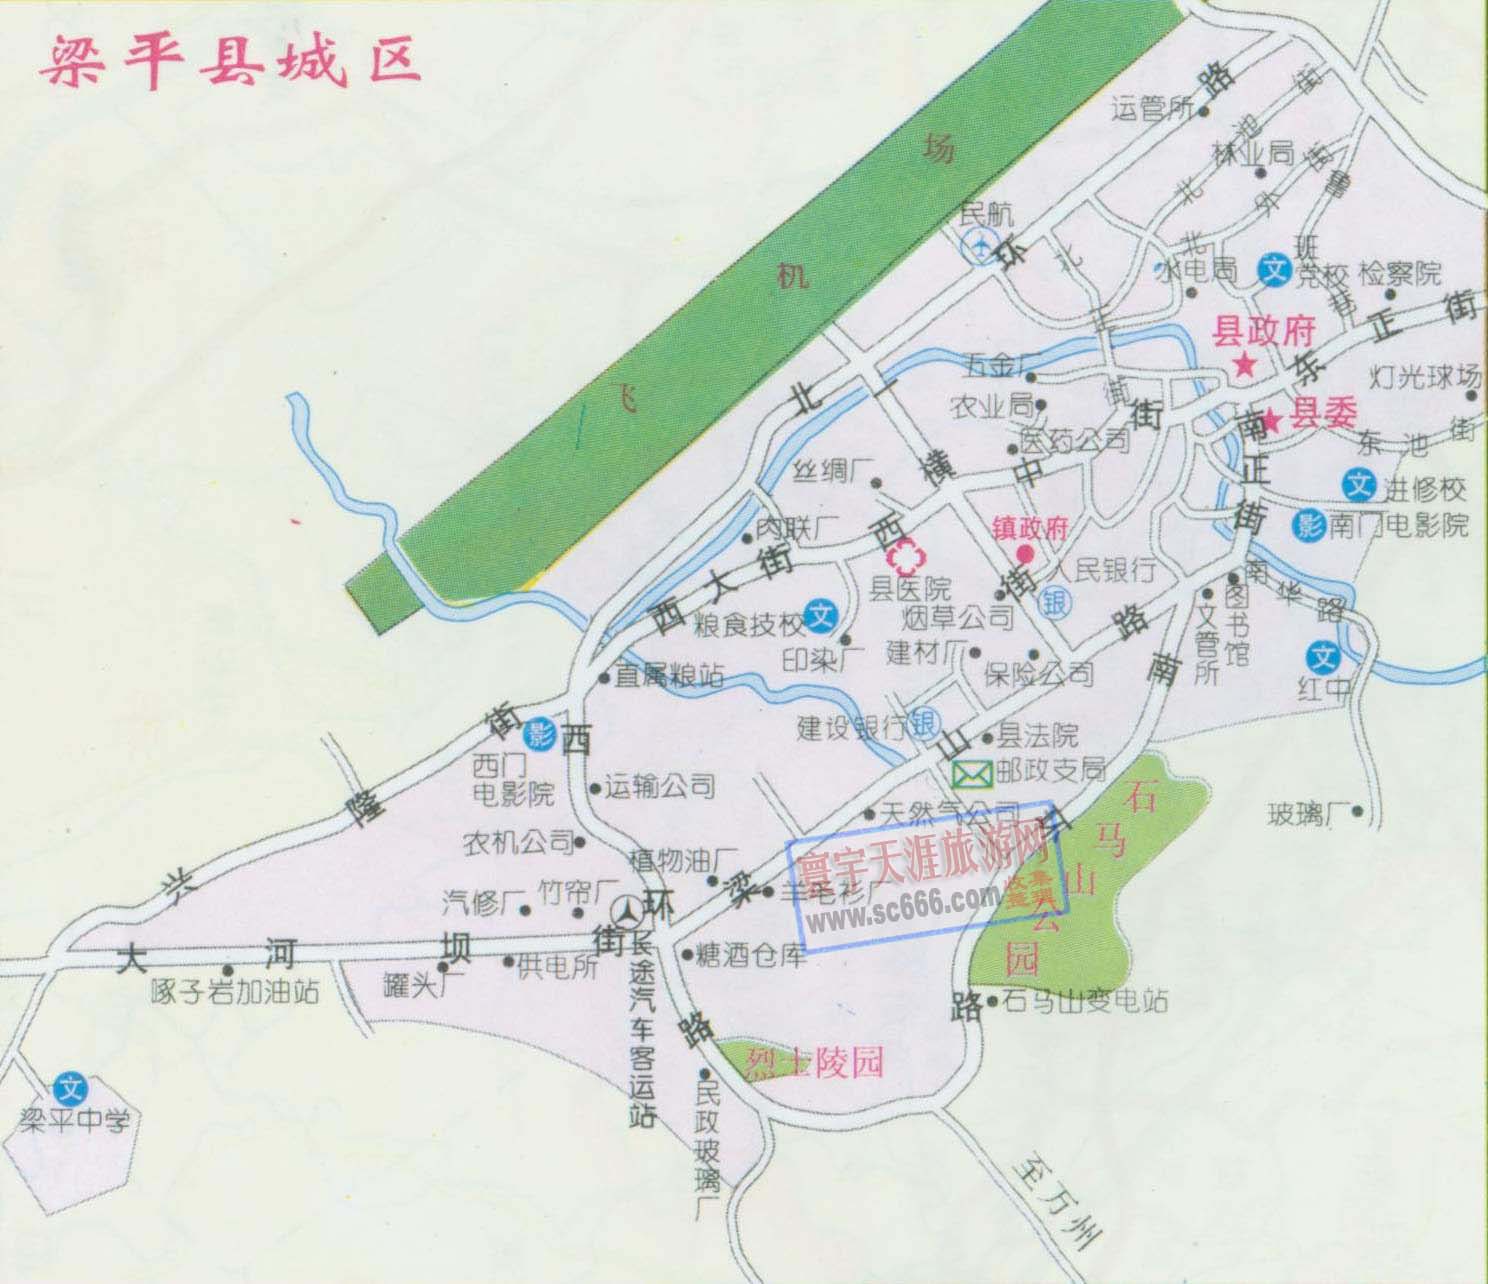 浏阳乡镇分布地图 浏阳蓝思科技厂区地图 浏阳乡镇线路地图全图